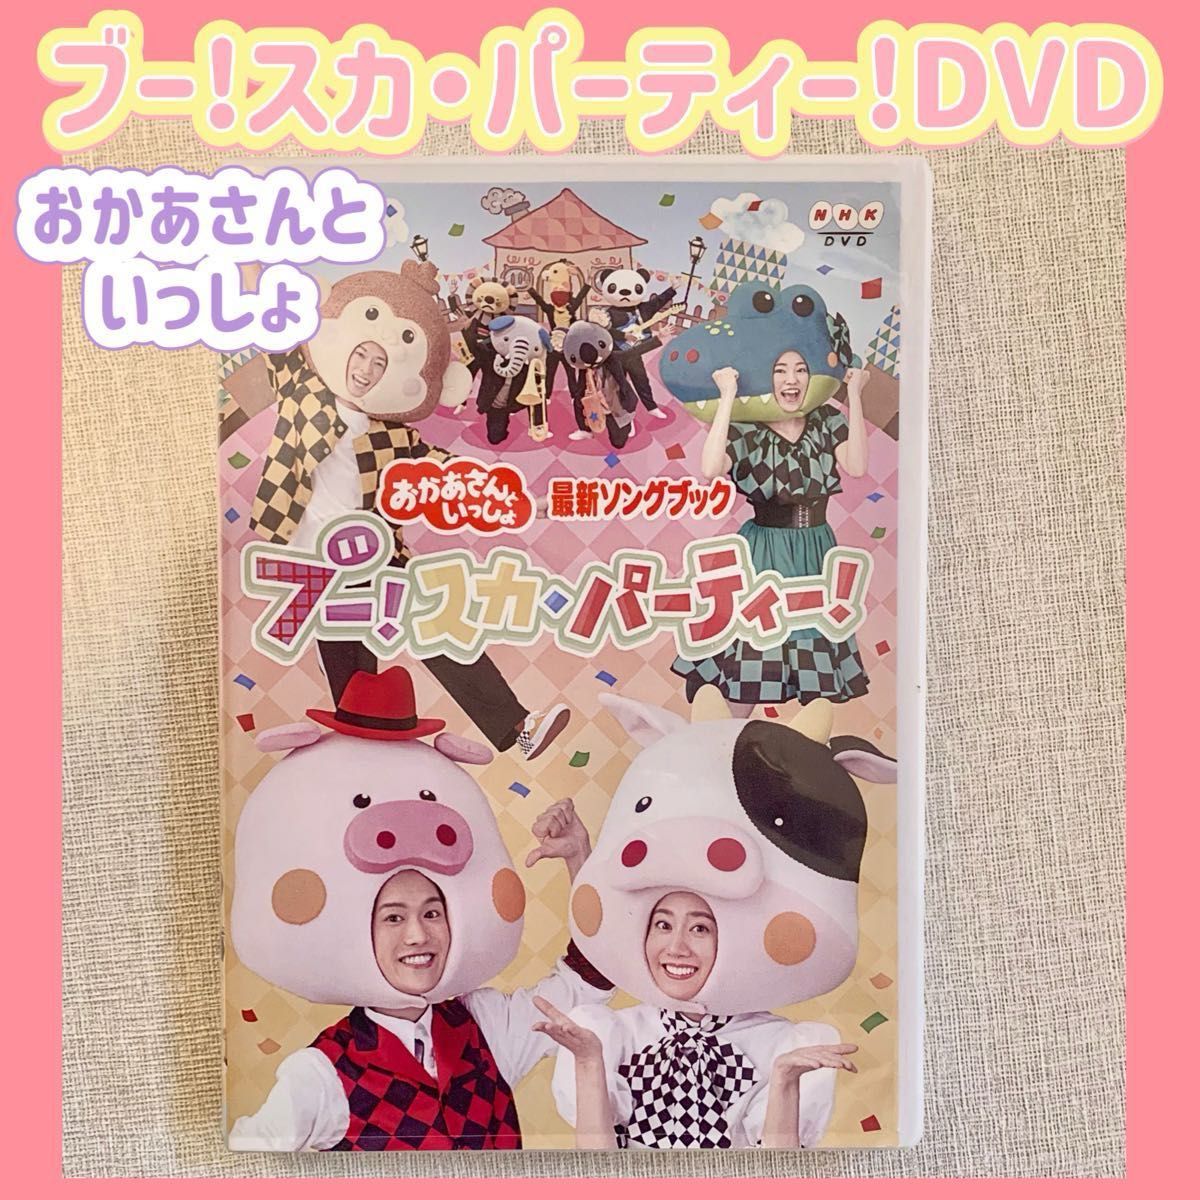 【即購入可☆】NHKおかあさんといっしょ 最新ソングブック ブー!スカ・パーティー!DVD